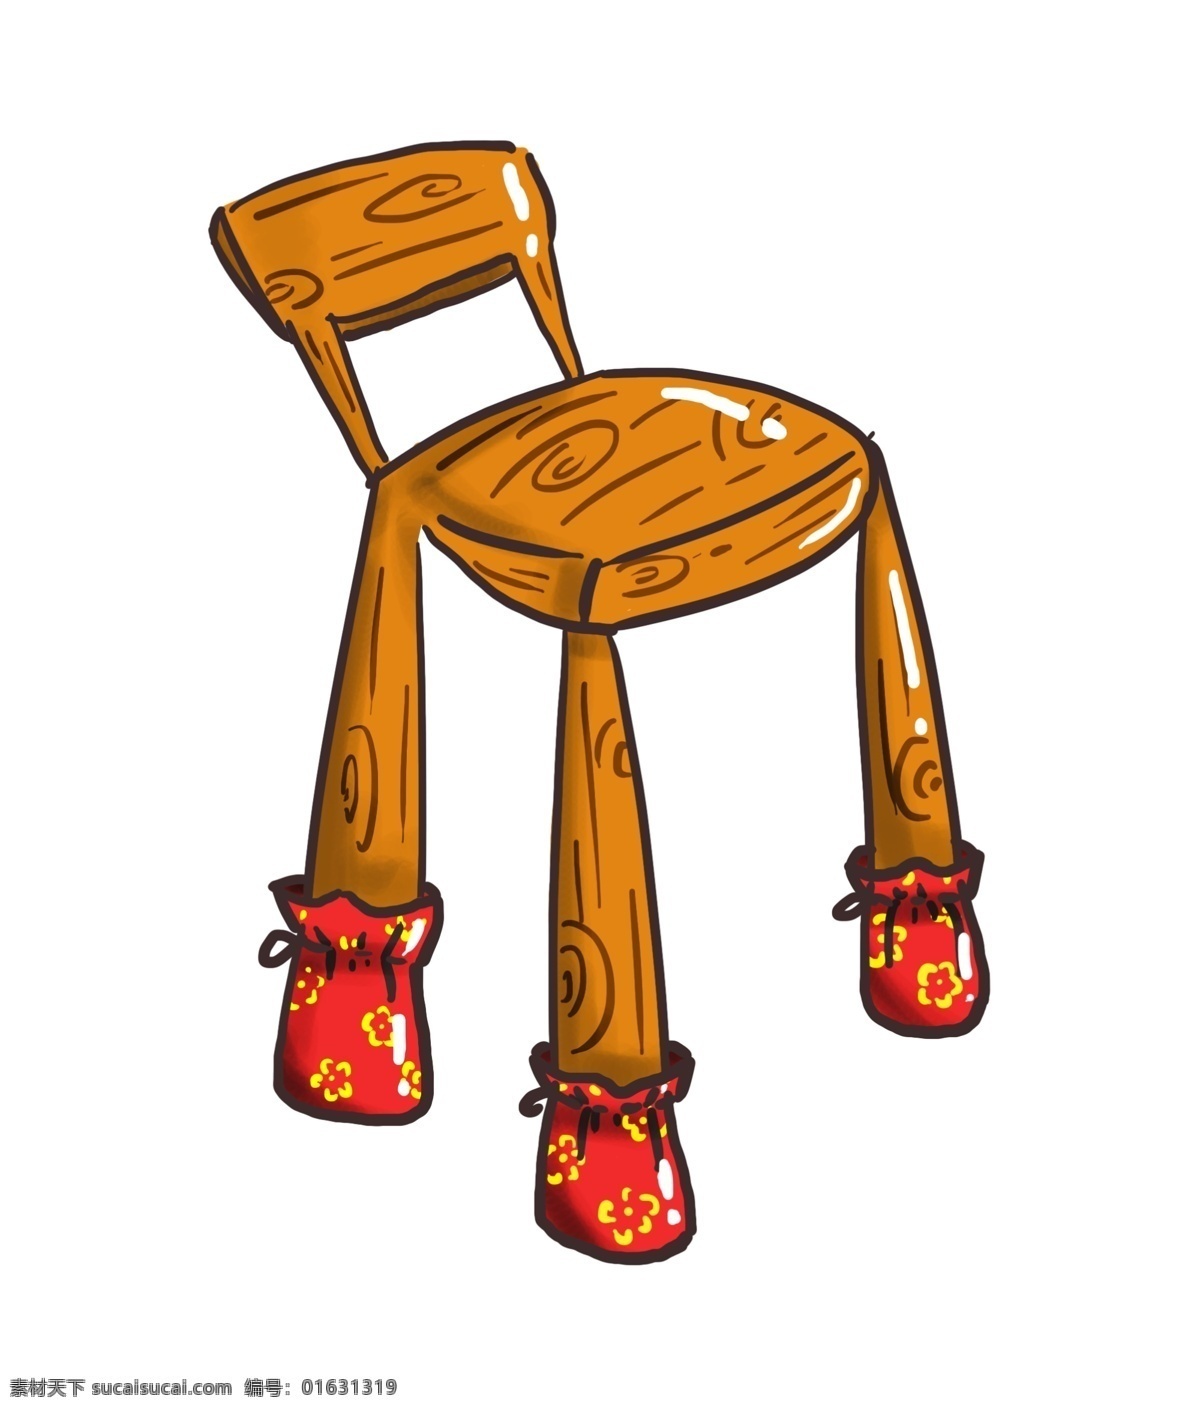 黄色 木 凳子 插画 黄色的木凳子 创意凳子 凳子装饰 家具 家装 时尚 木头凳子 高凳子 红色 脚垫